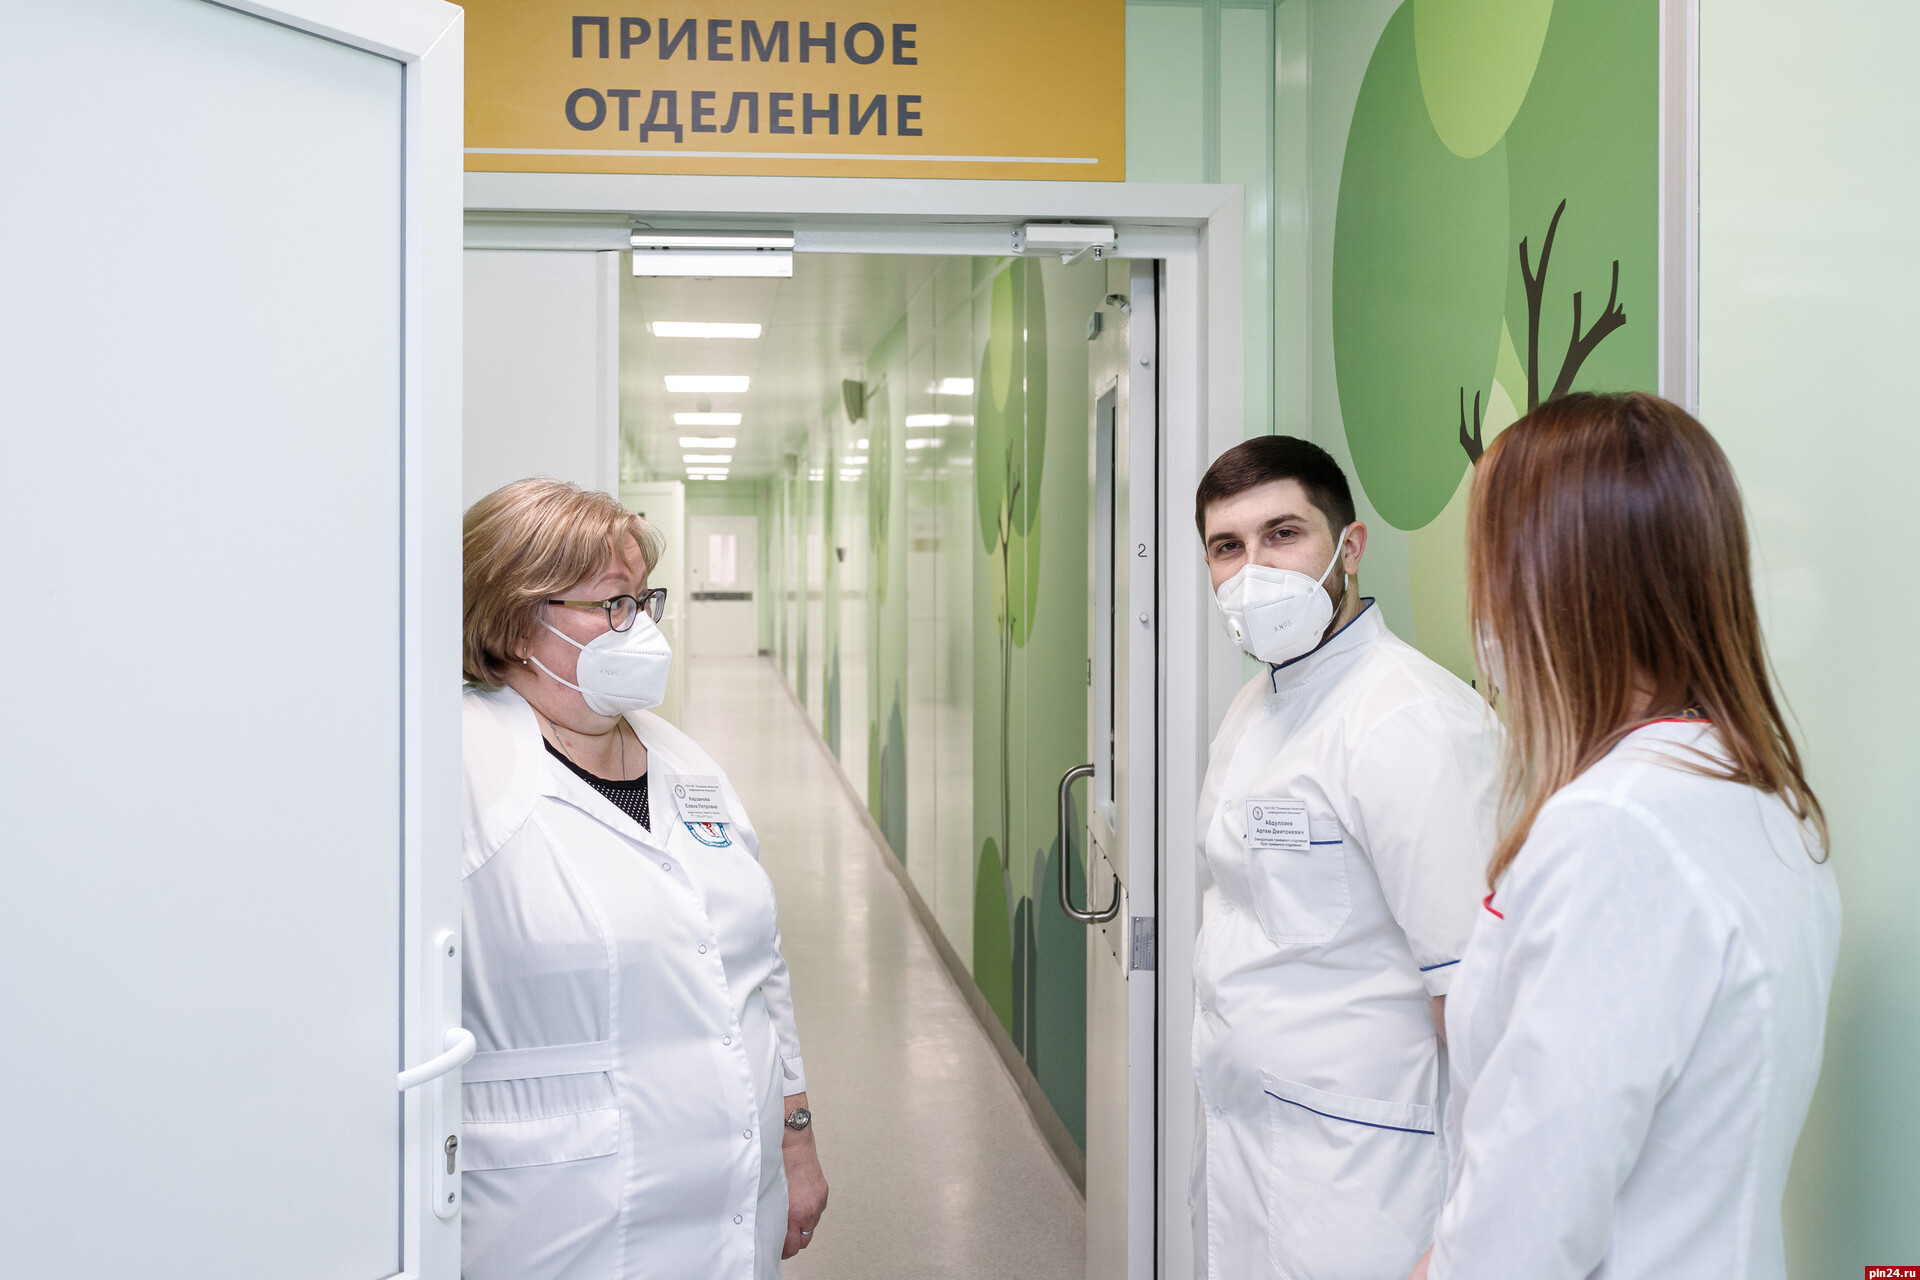 Квартиры, льготы и выплаты: как поддерживают врачей в Псковской области?